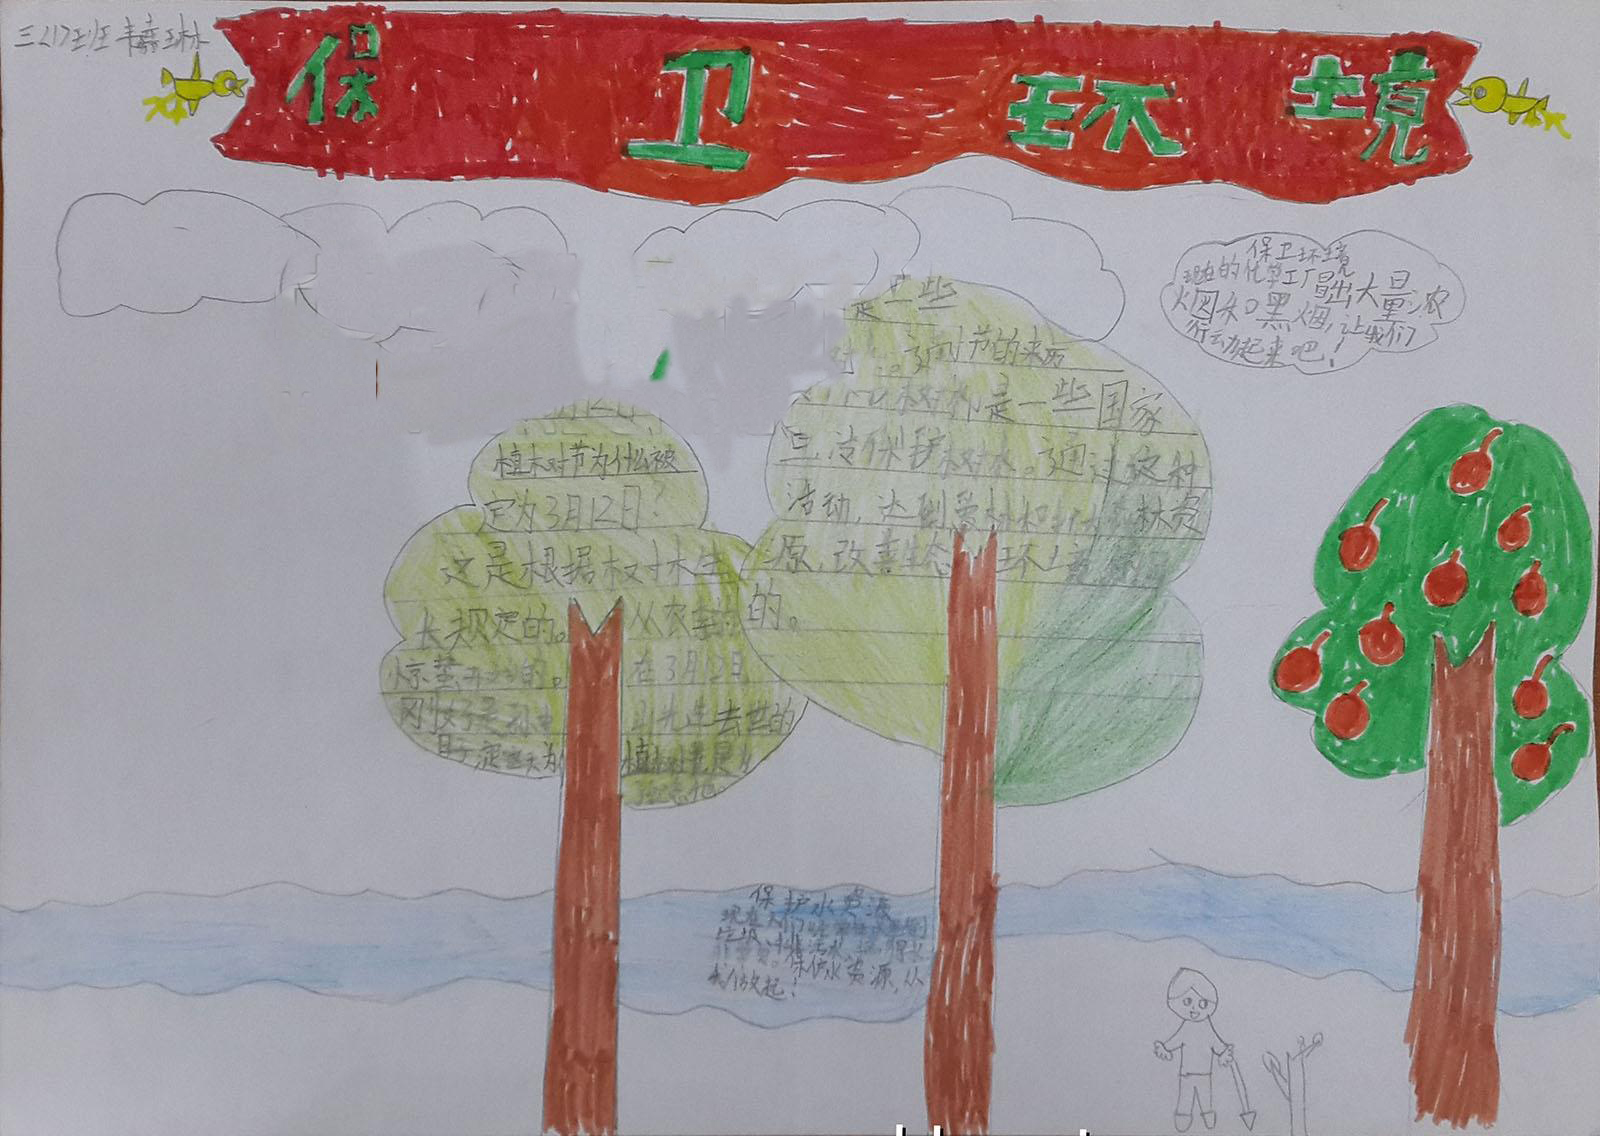 三年级手抄报:争当环保小画家